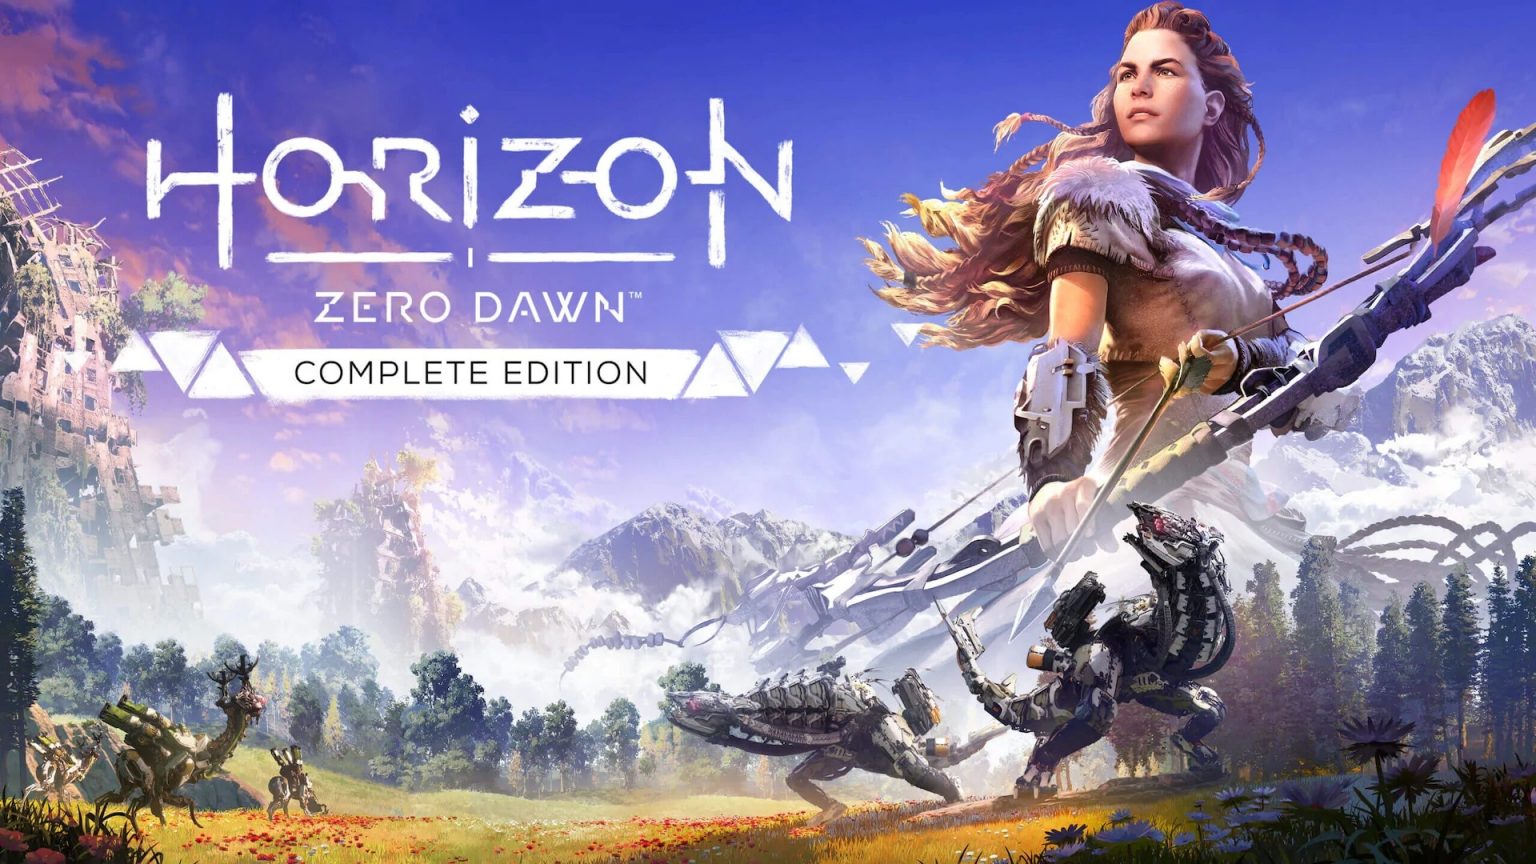 Horizon Zero Dawn PS4 Version Full Game Setup Free Download